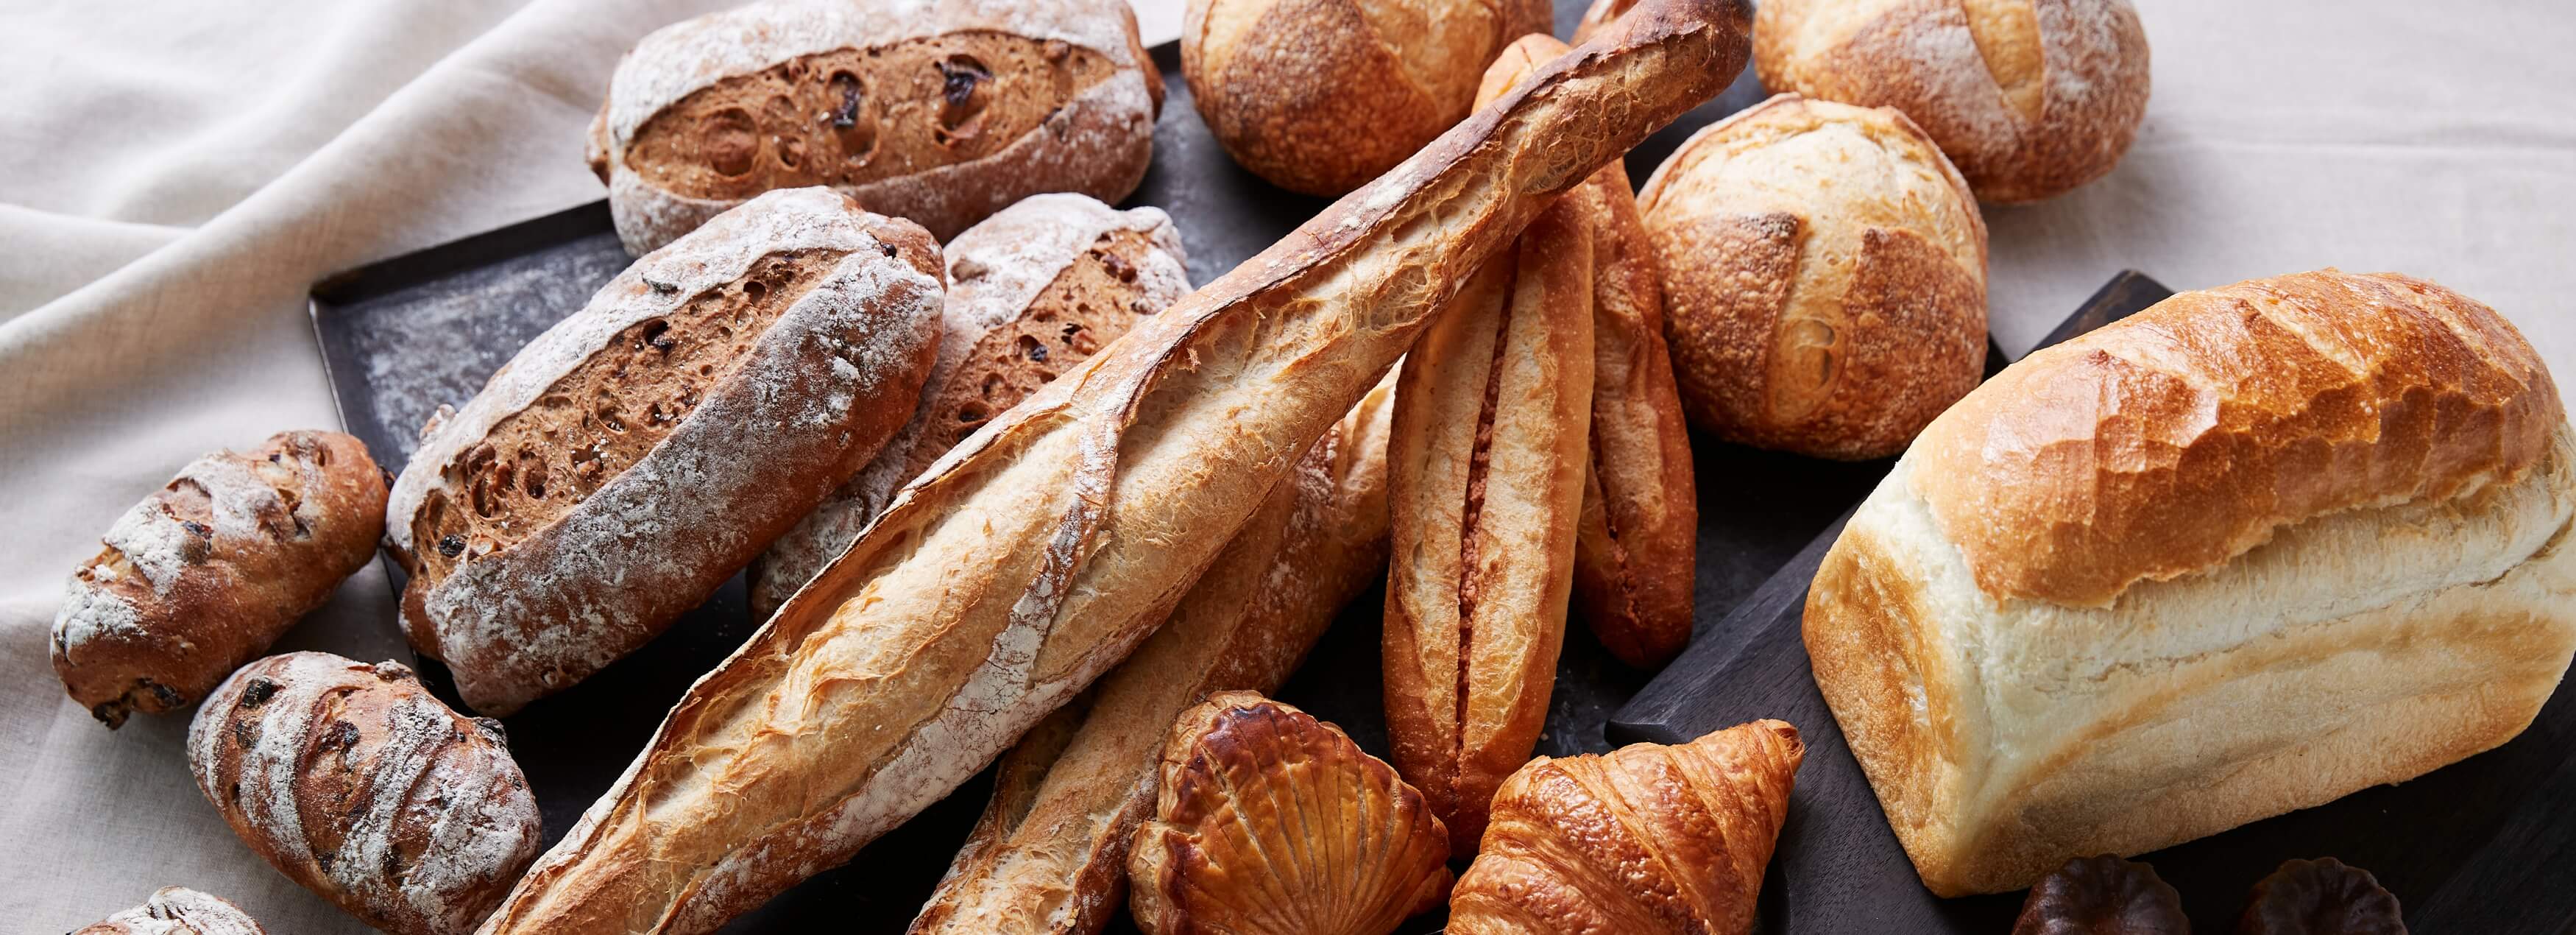 フランスパン・食パン・クロワッサンなどさまざまな種類のパン